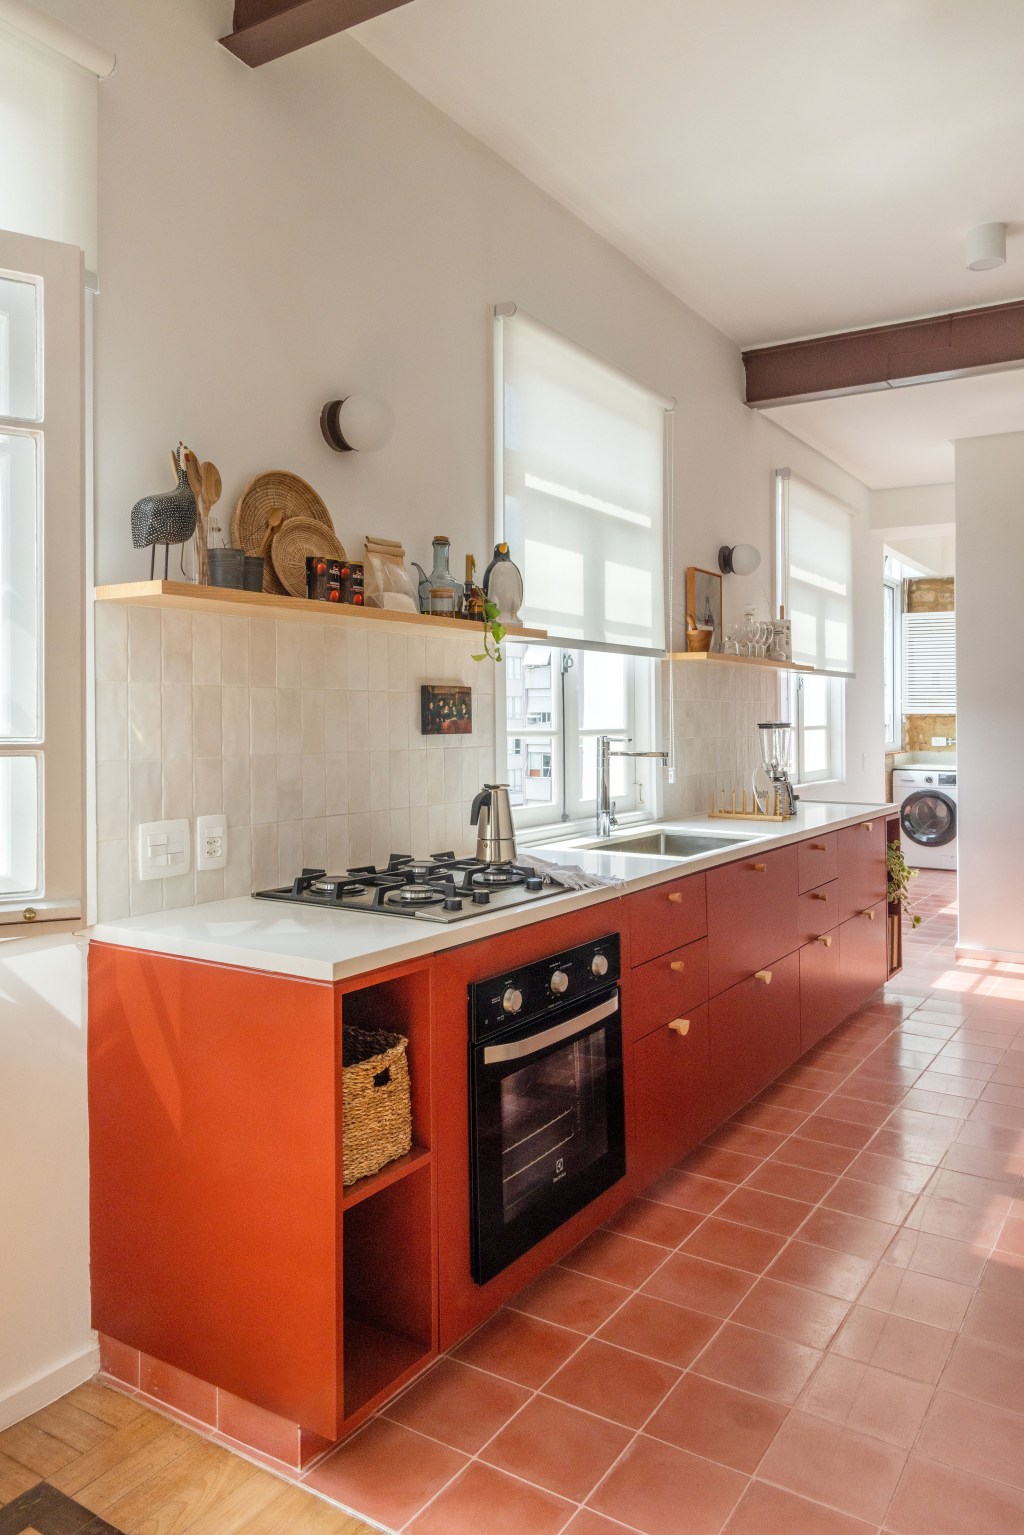 Apê de 90 m² ganha cara de casa com revestimentos charmosos e cores. Projeto Ana Neri. Na foto, cozinha com armários na cor terrosa.